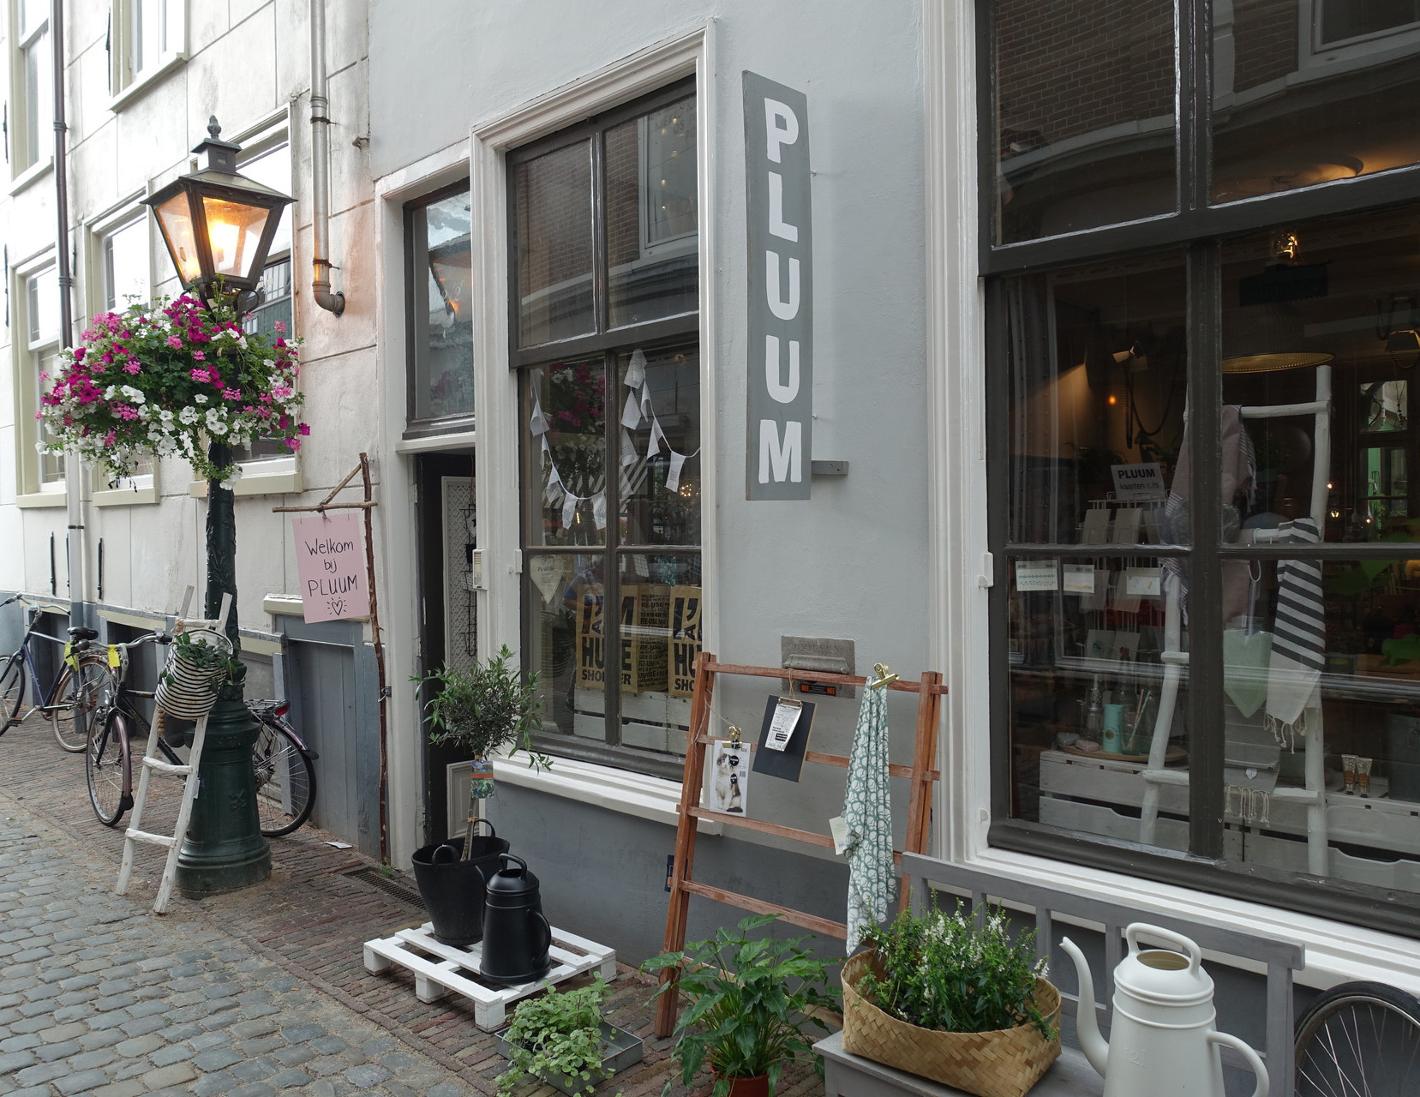 Foto PLUUM in Leiden, Winkelen, Kado's & geschenken, Wonen & koken - #4